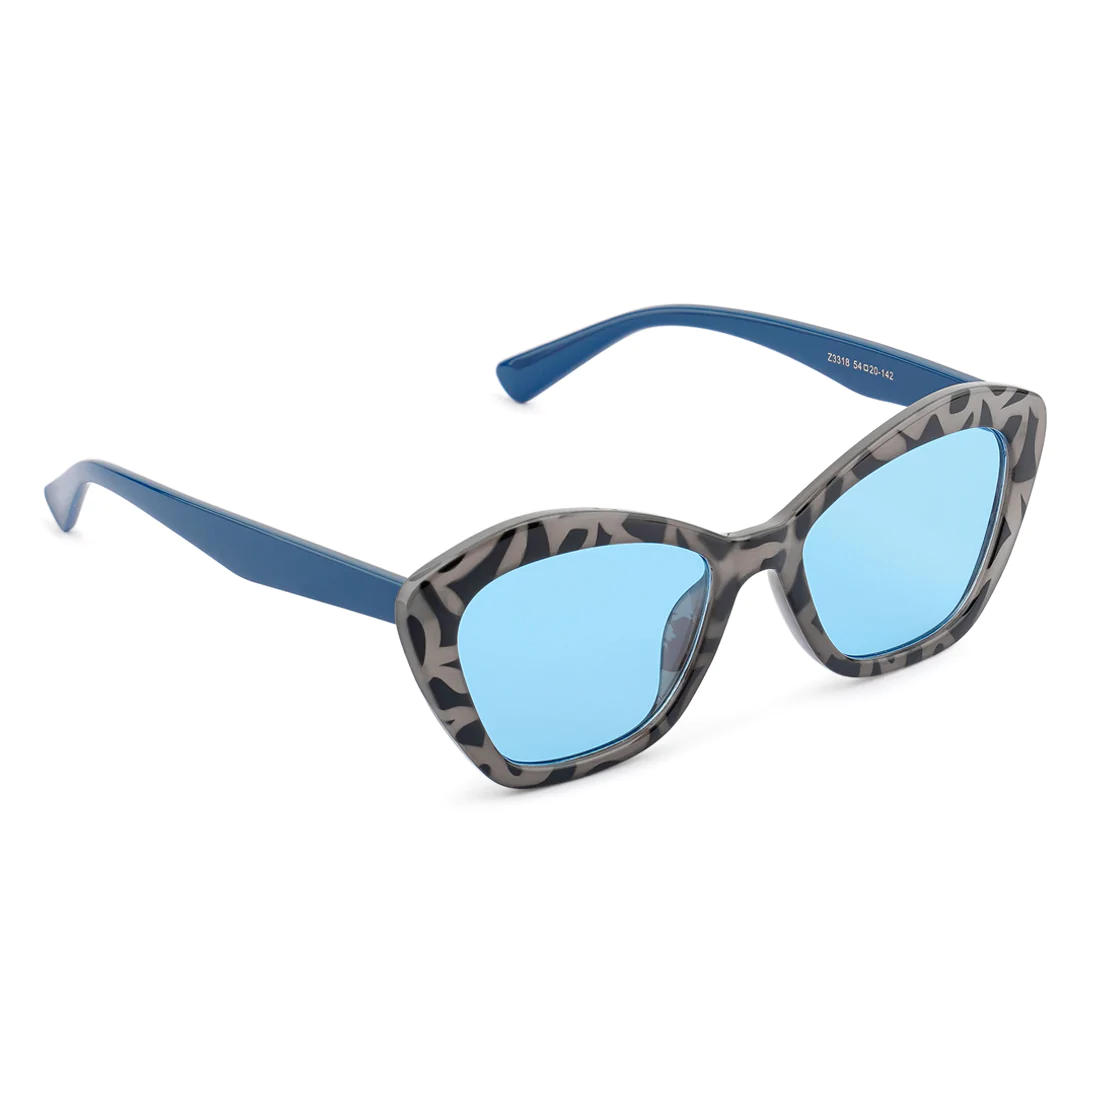 Gafas de sol de marco de marco impreso en azul